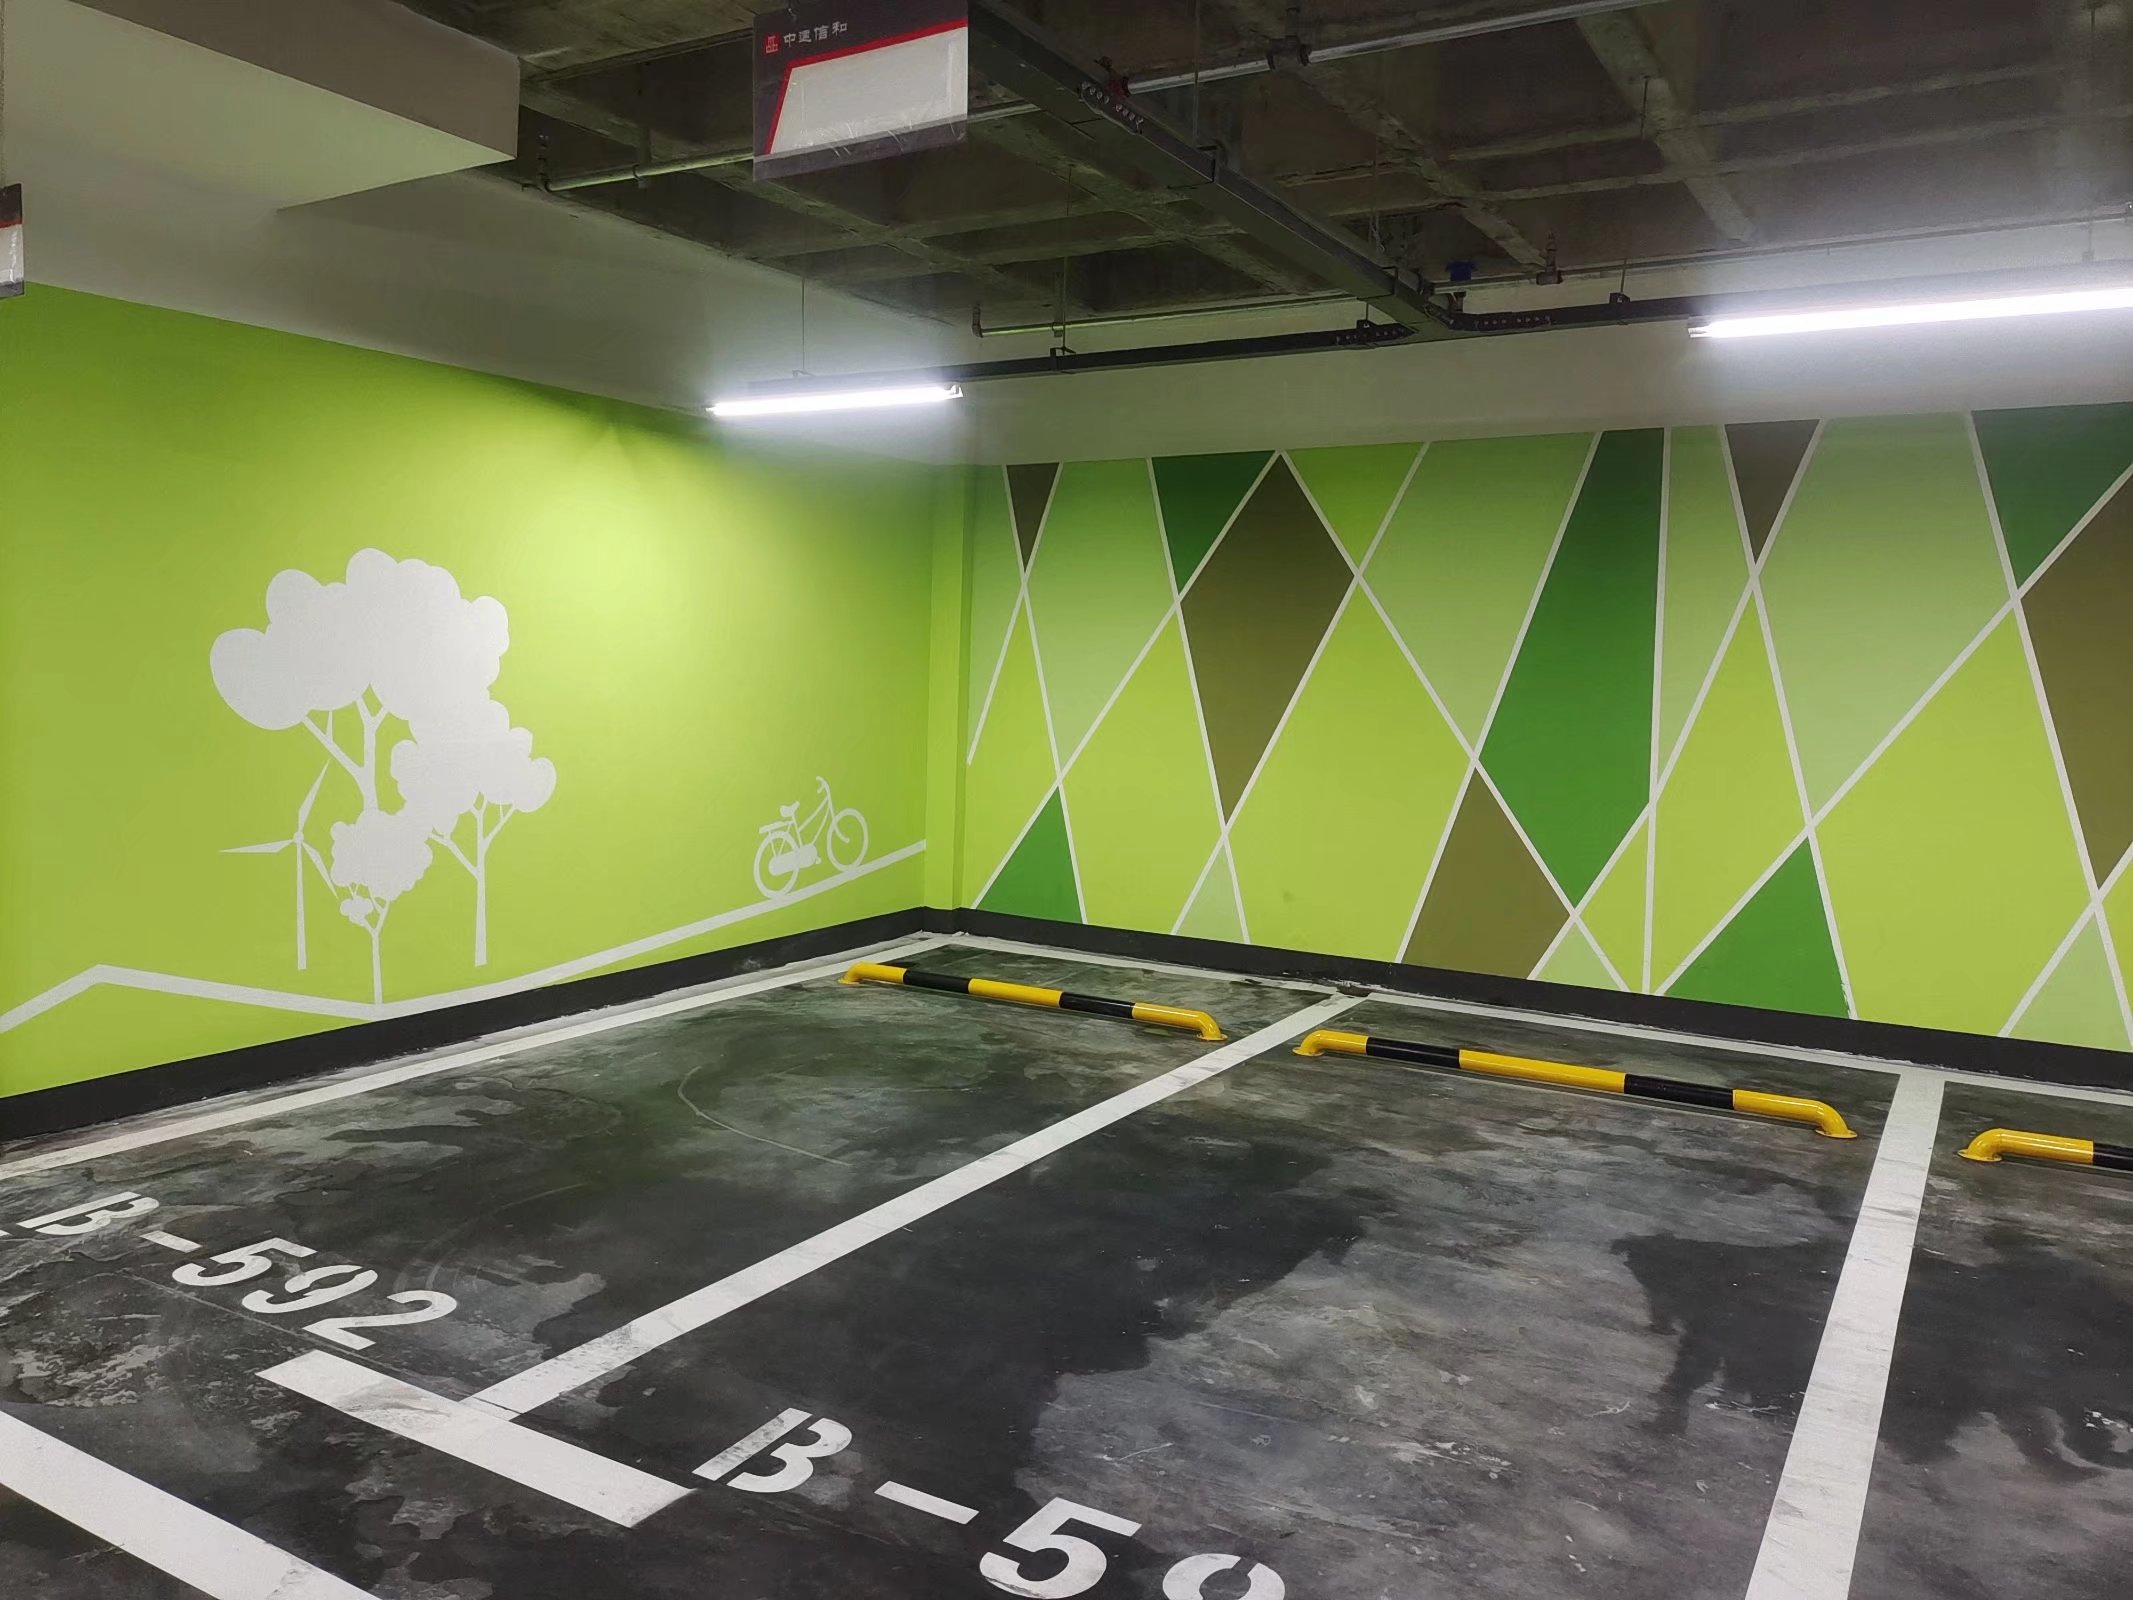 天津武清区地下车库柱面喷涂彩绘 停车场墙面涂装上门施工